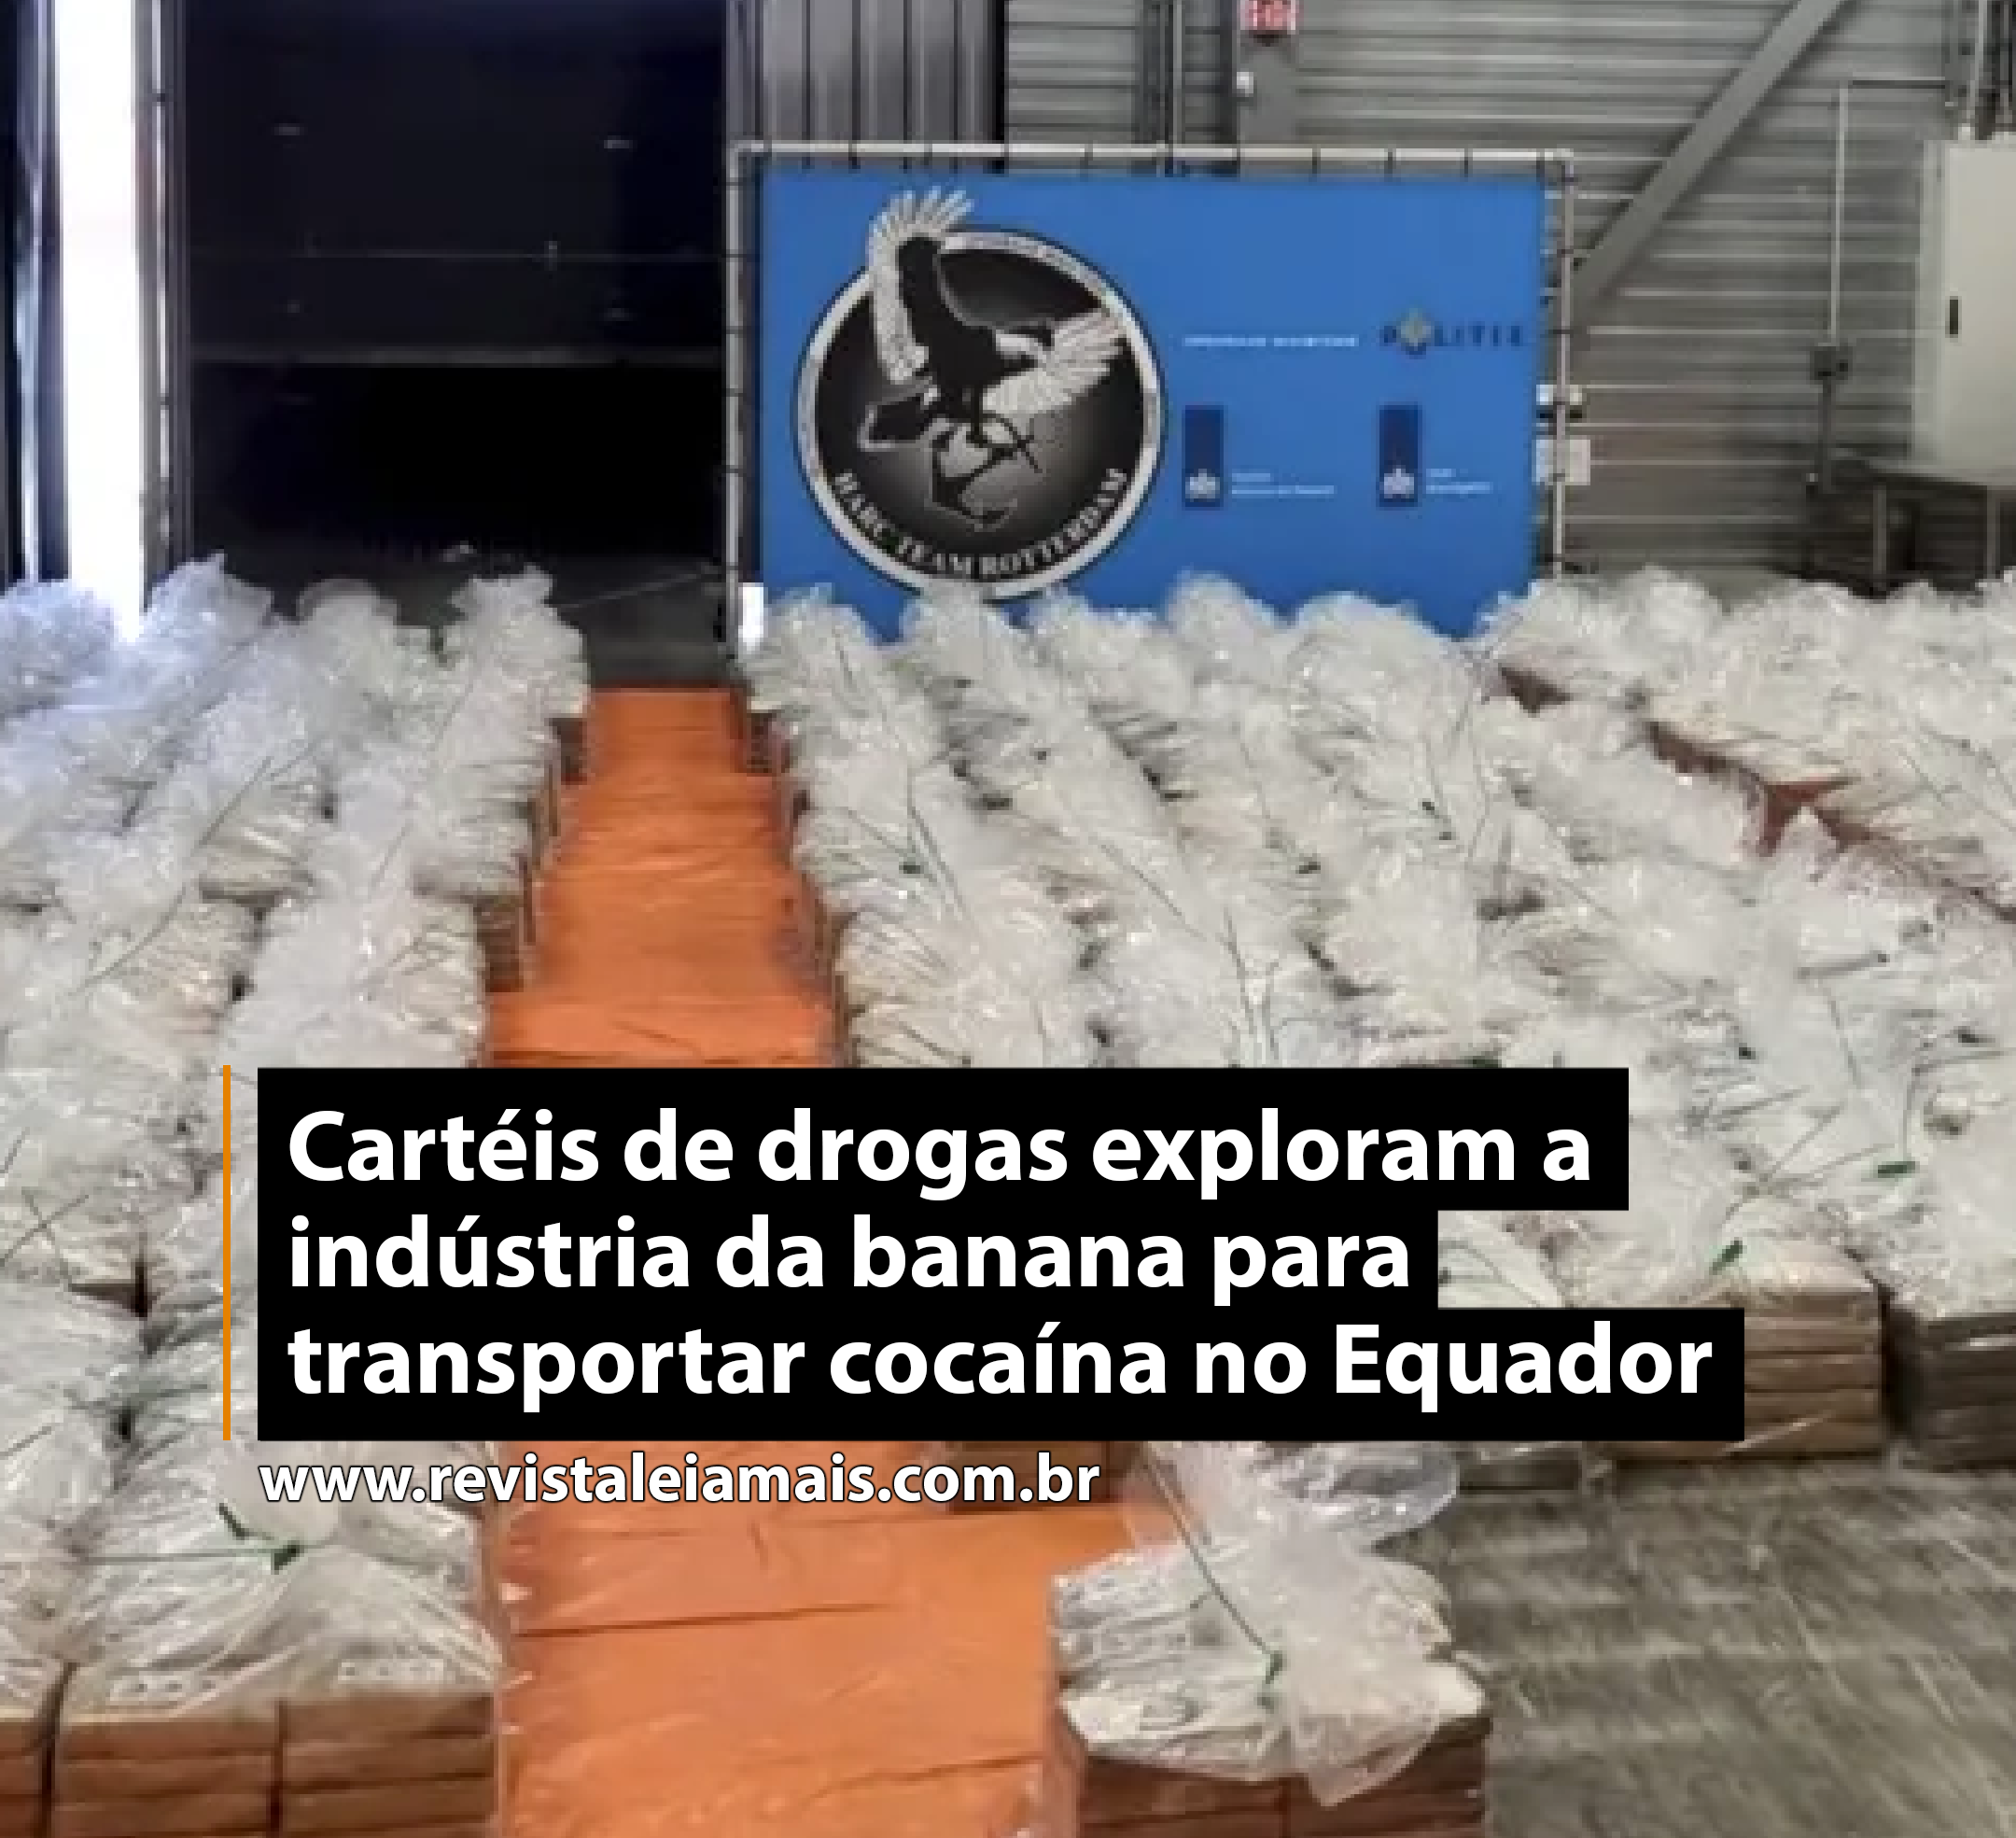 Cartéis de drogas exploram a indústria da banana para transportar cocaína no Equador